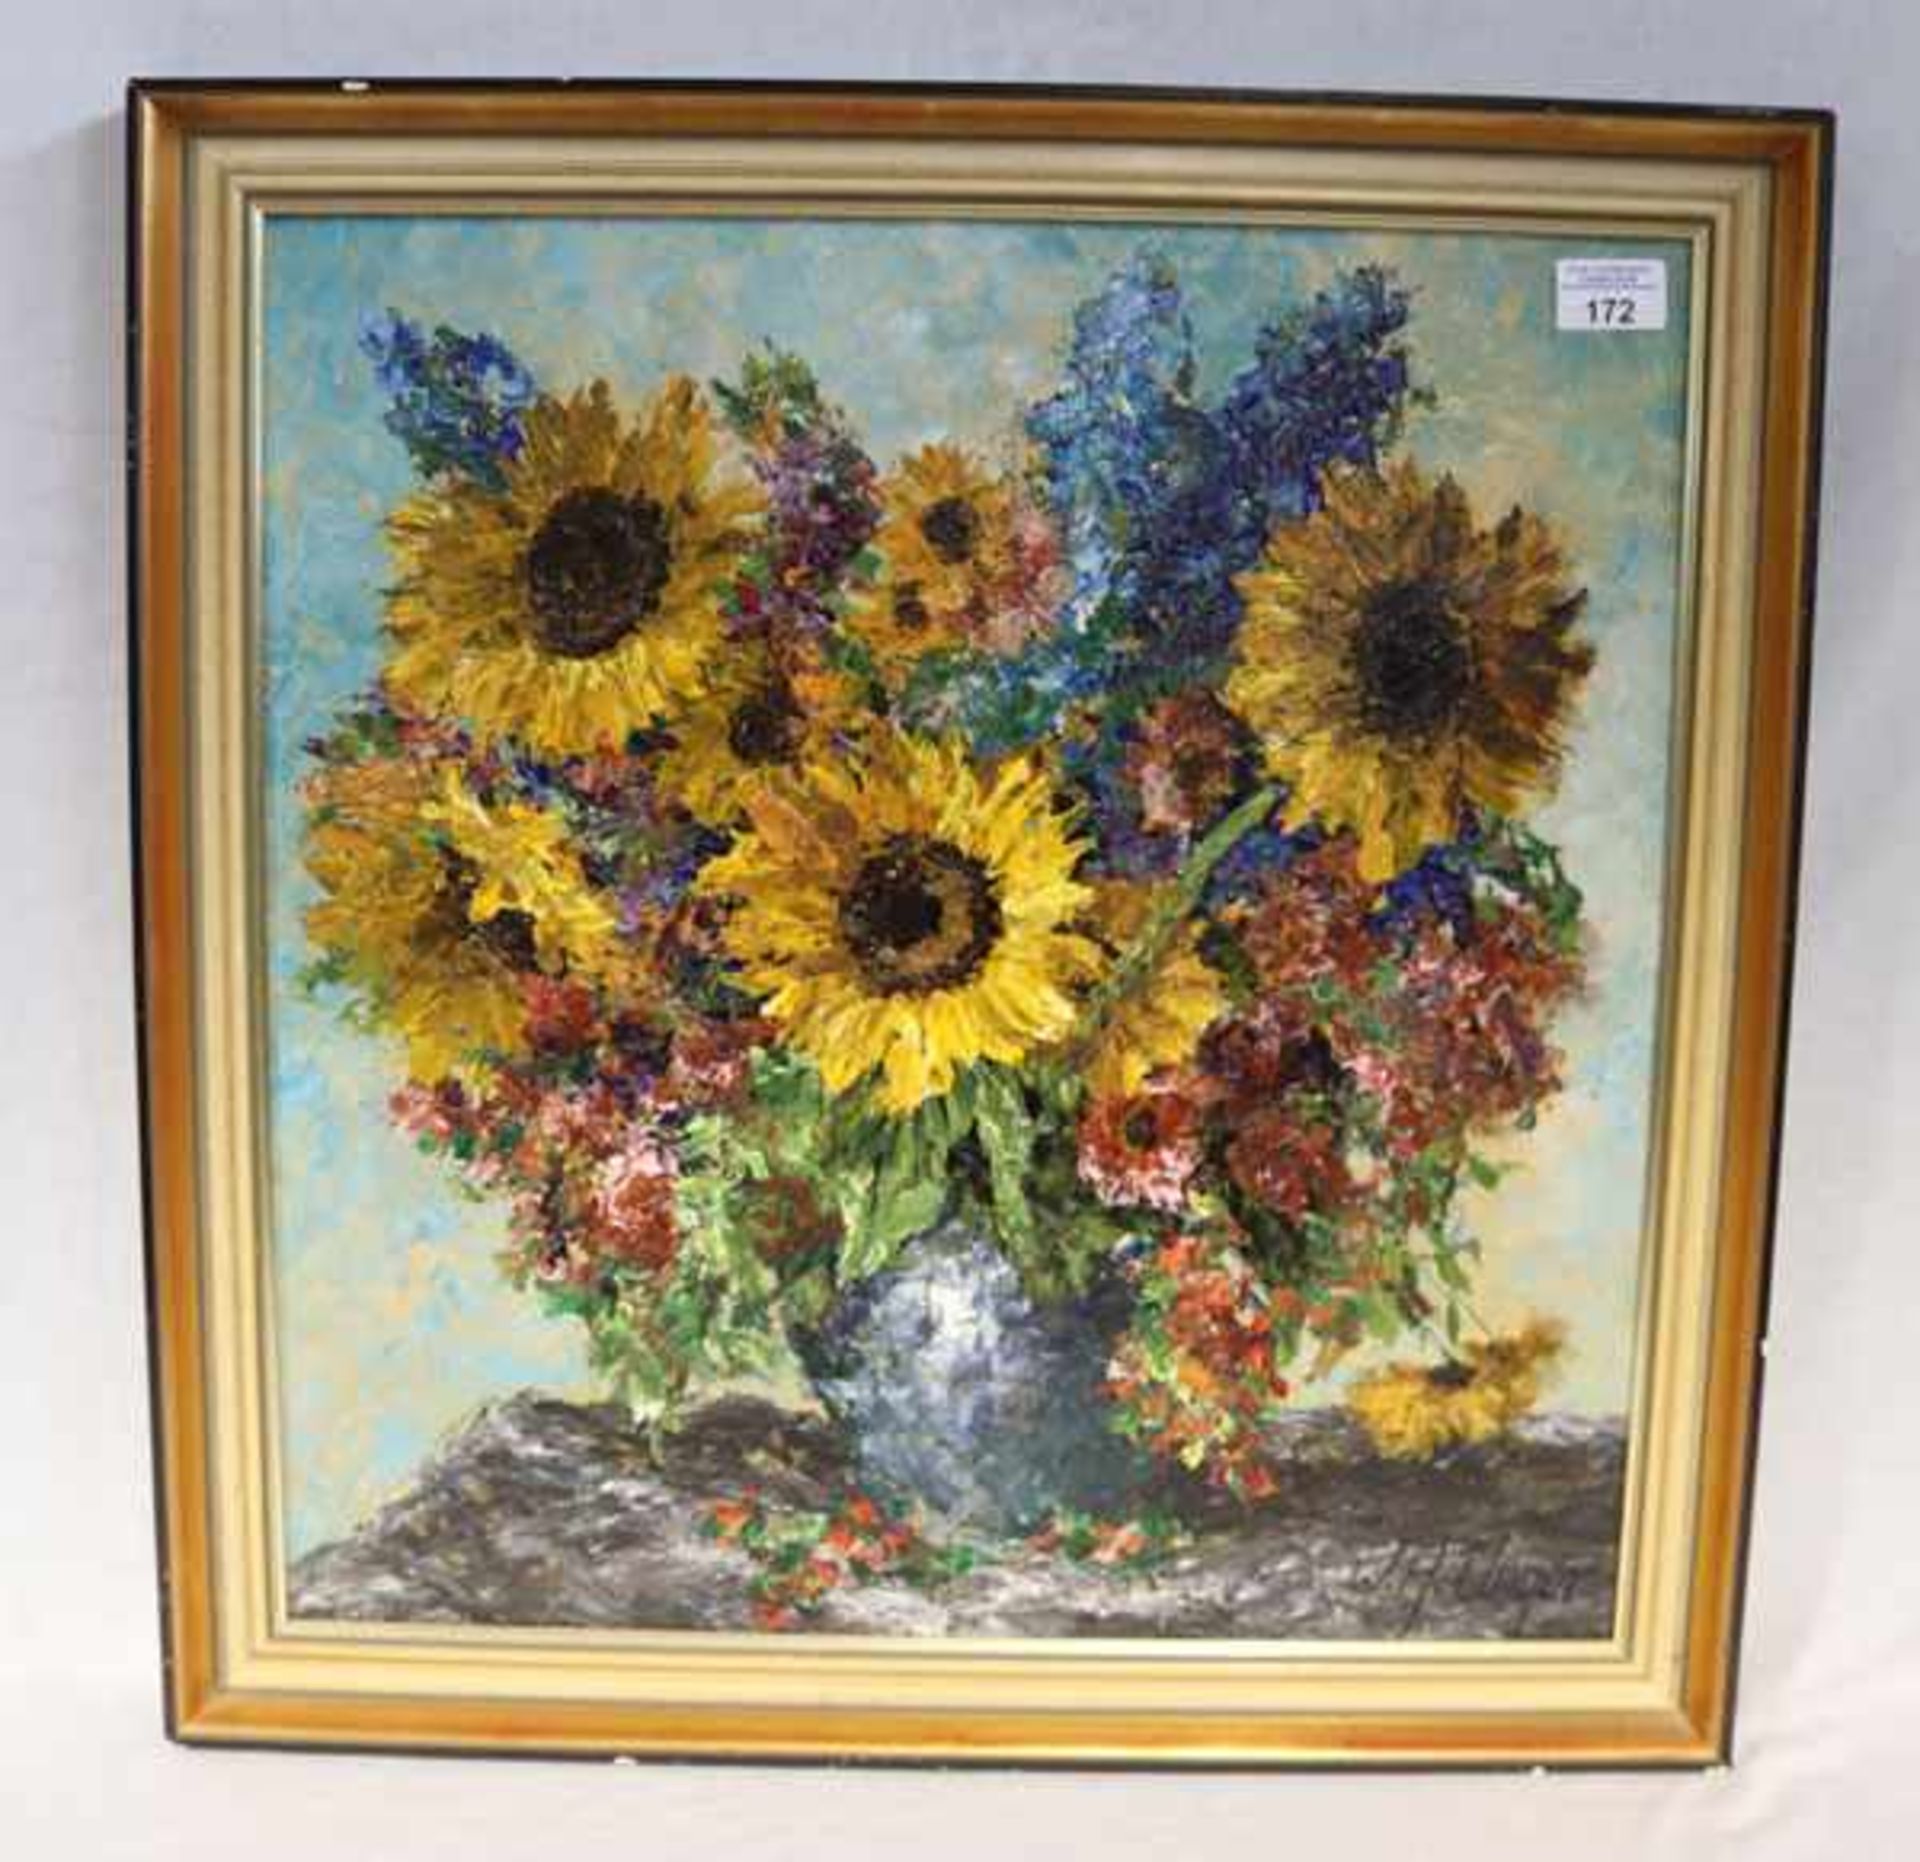 Gemälde ÖL/Hartfaser 'Bunter Strauß mit Sonnenblumen', signiert W. H. (Wolfgang Heinz) Unger, * 1929